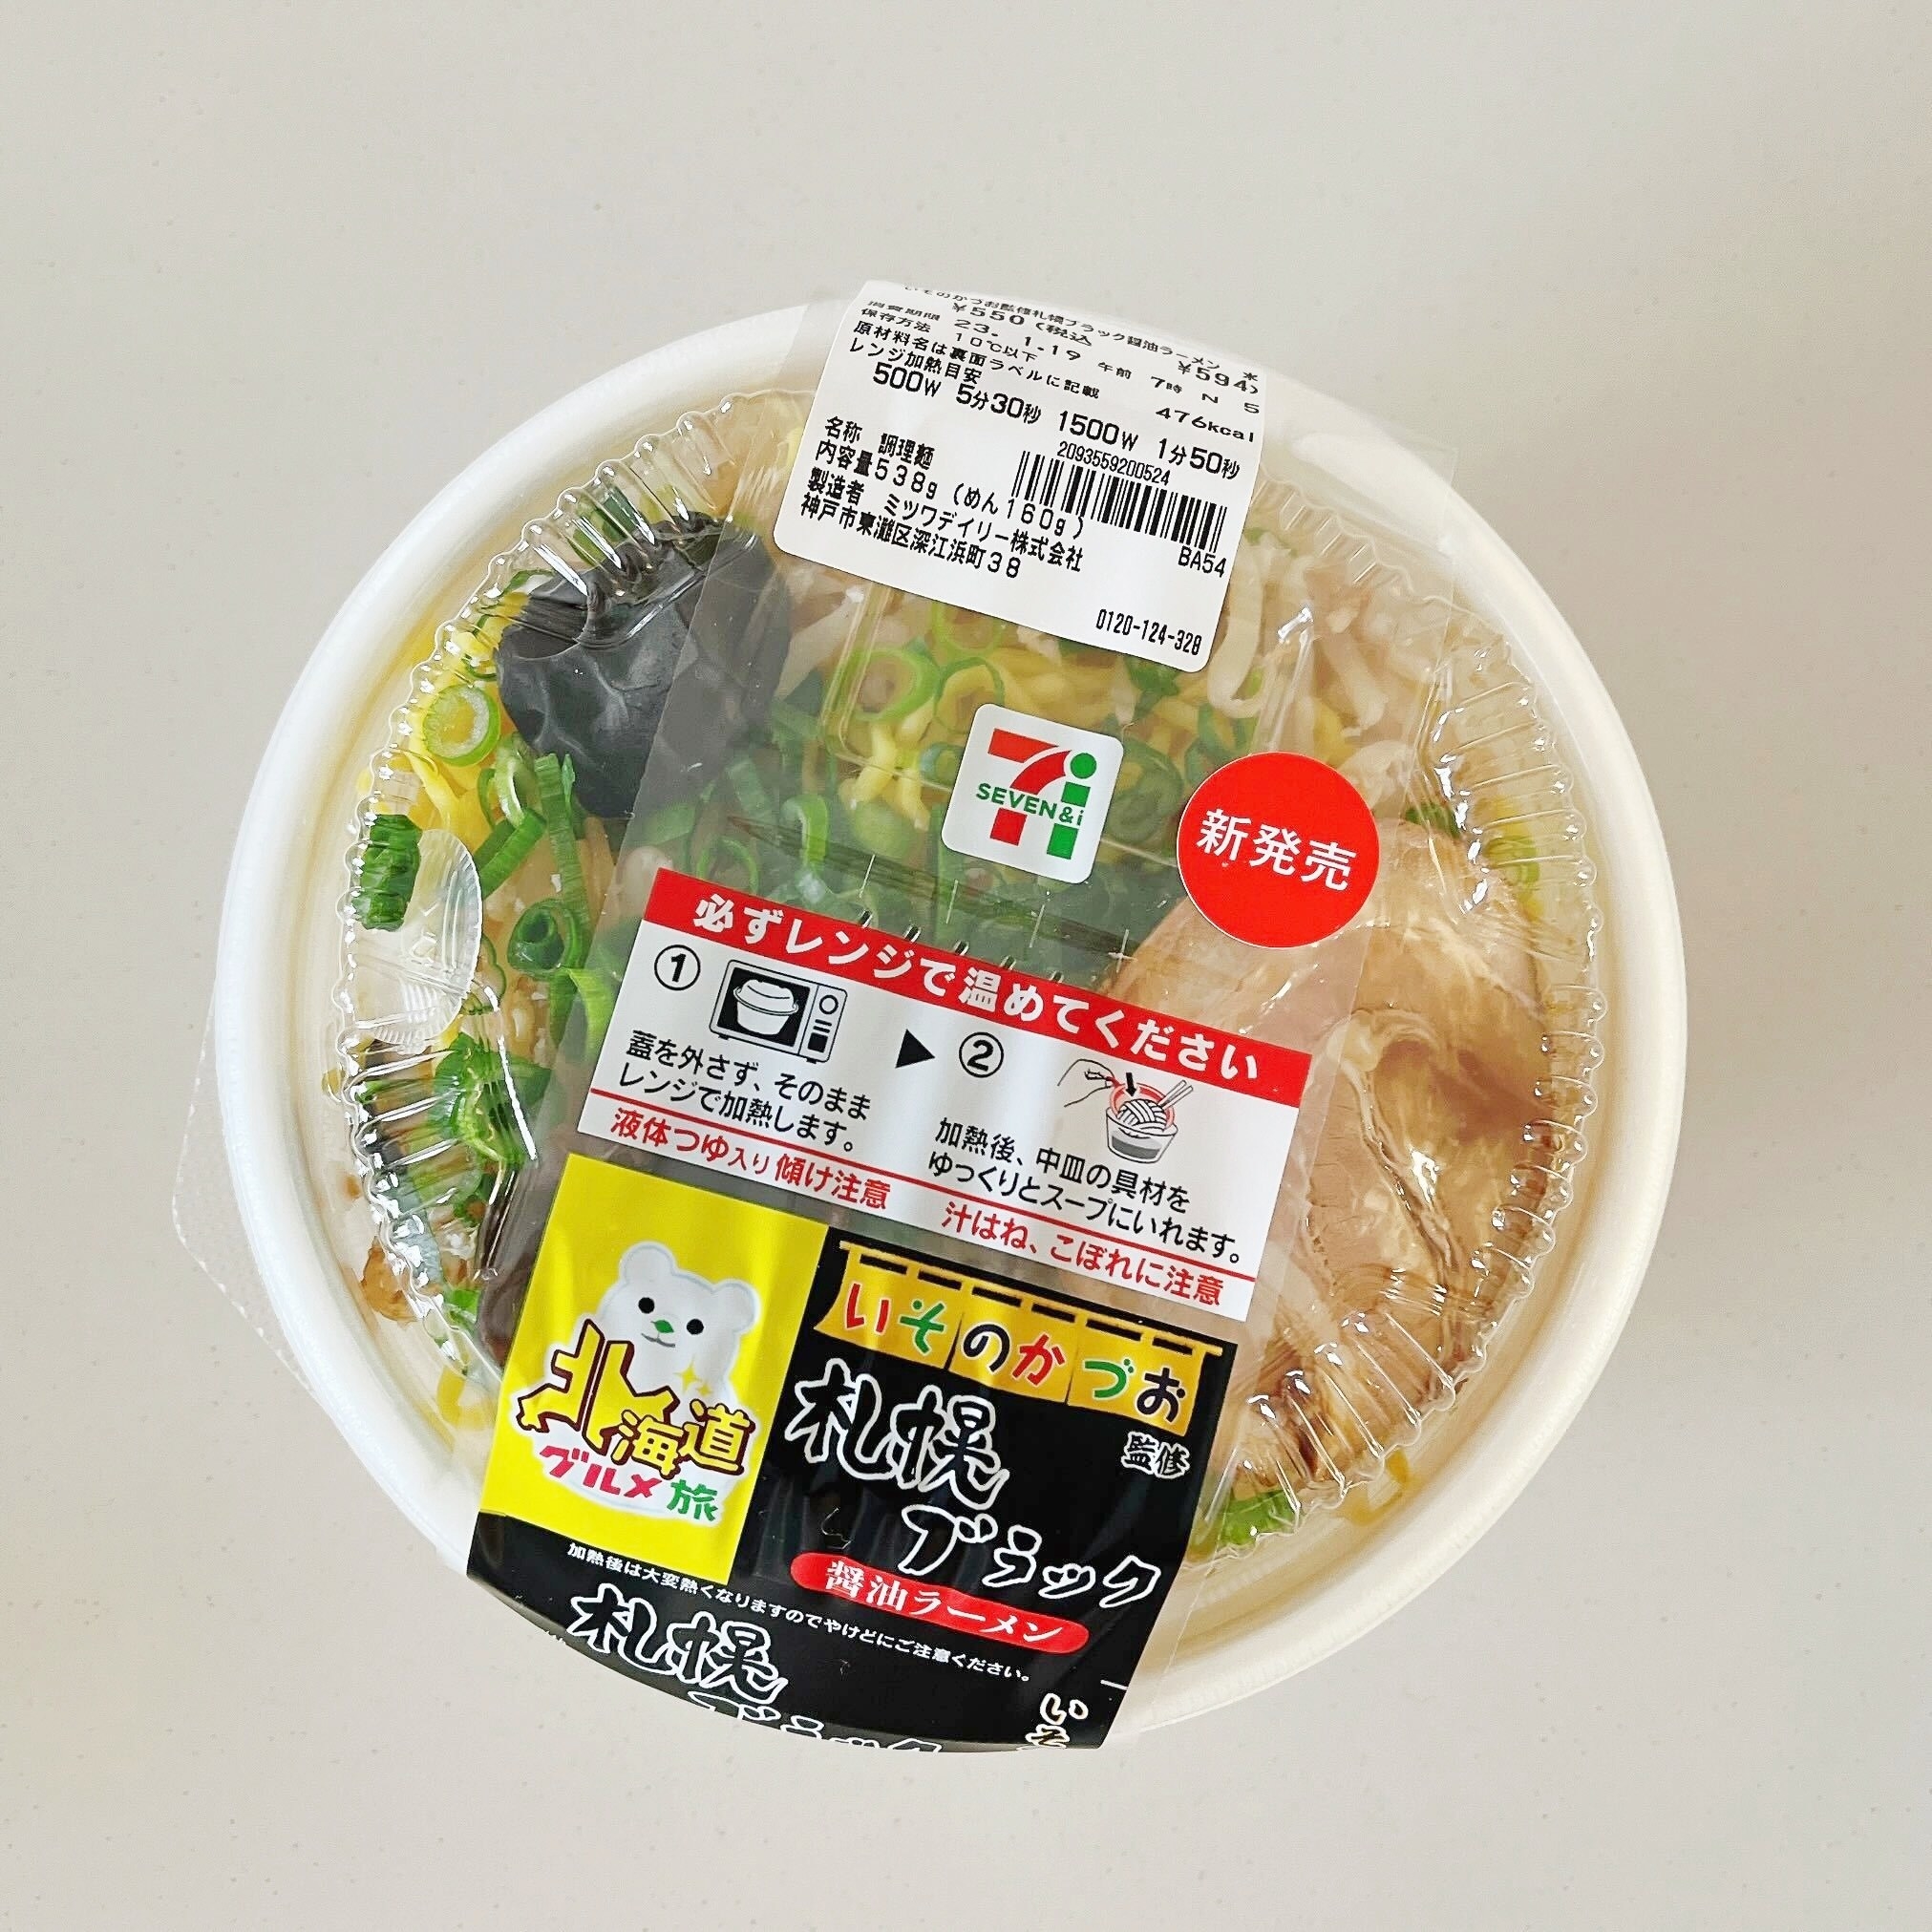 セブン-イレブンのオススメの新商品「いそのかづお監修 札幌ブラック醤油ラーメン」